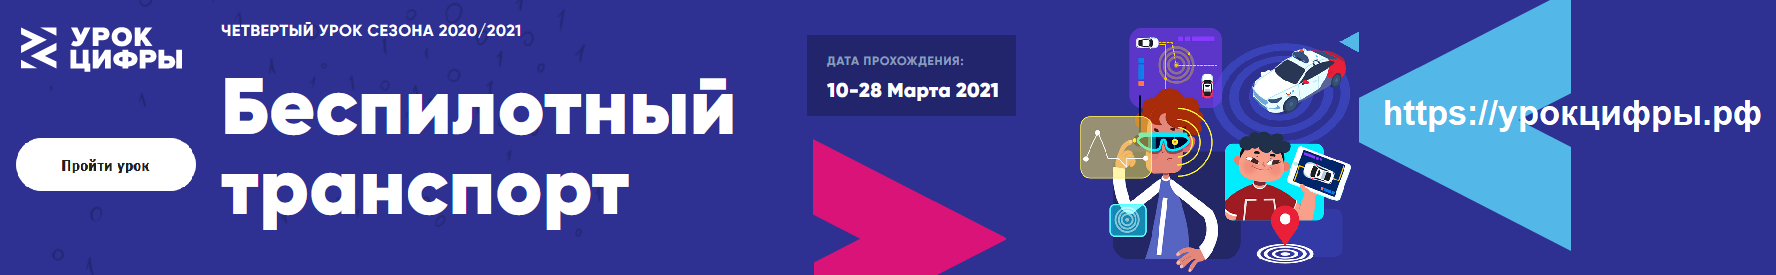 Урок цифры 2020 официальный сайт